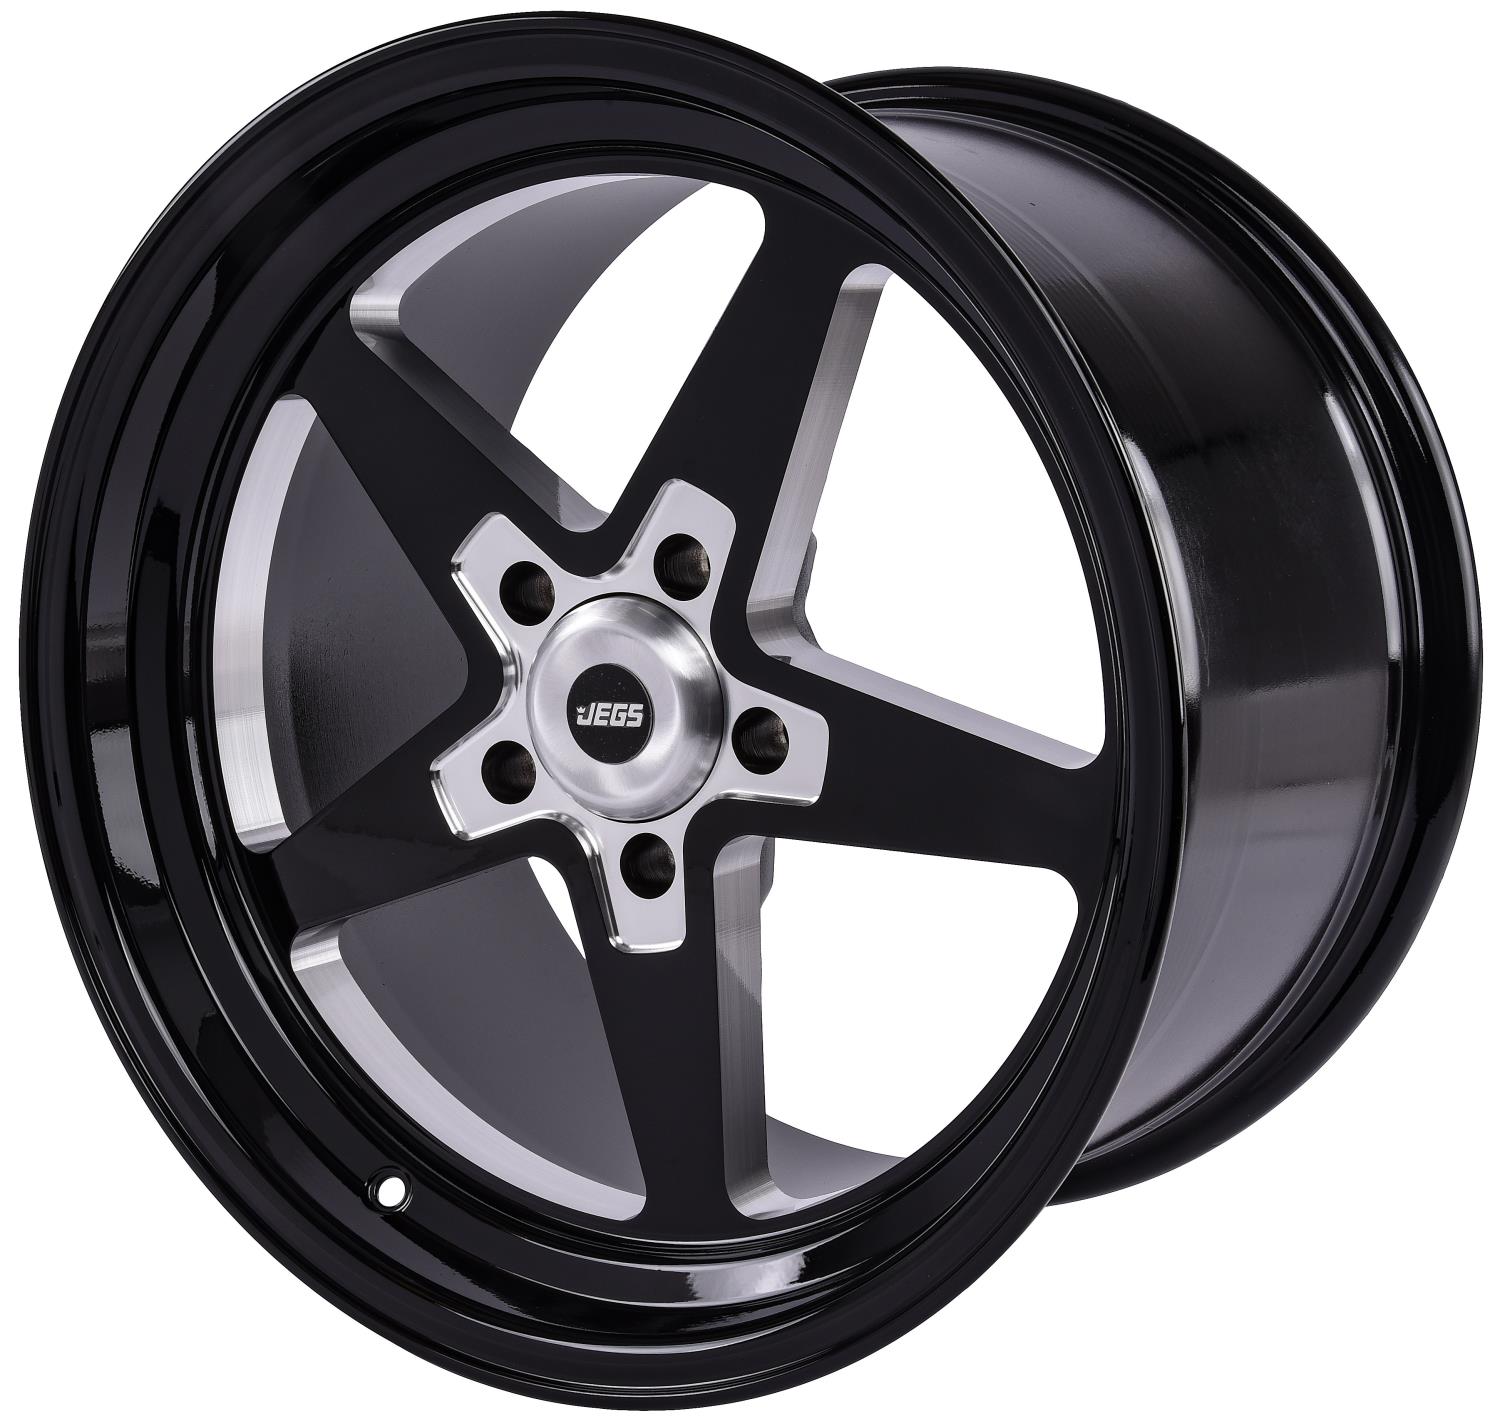 SSR Star Wheel [Size: 17" x 10"] Gloss Black